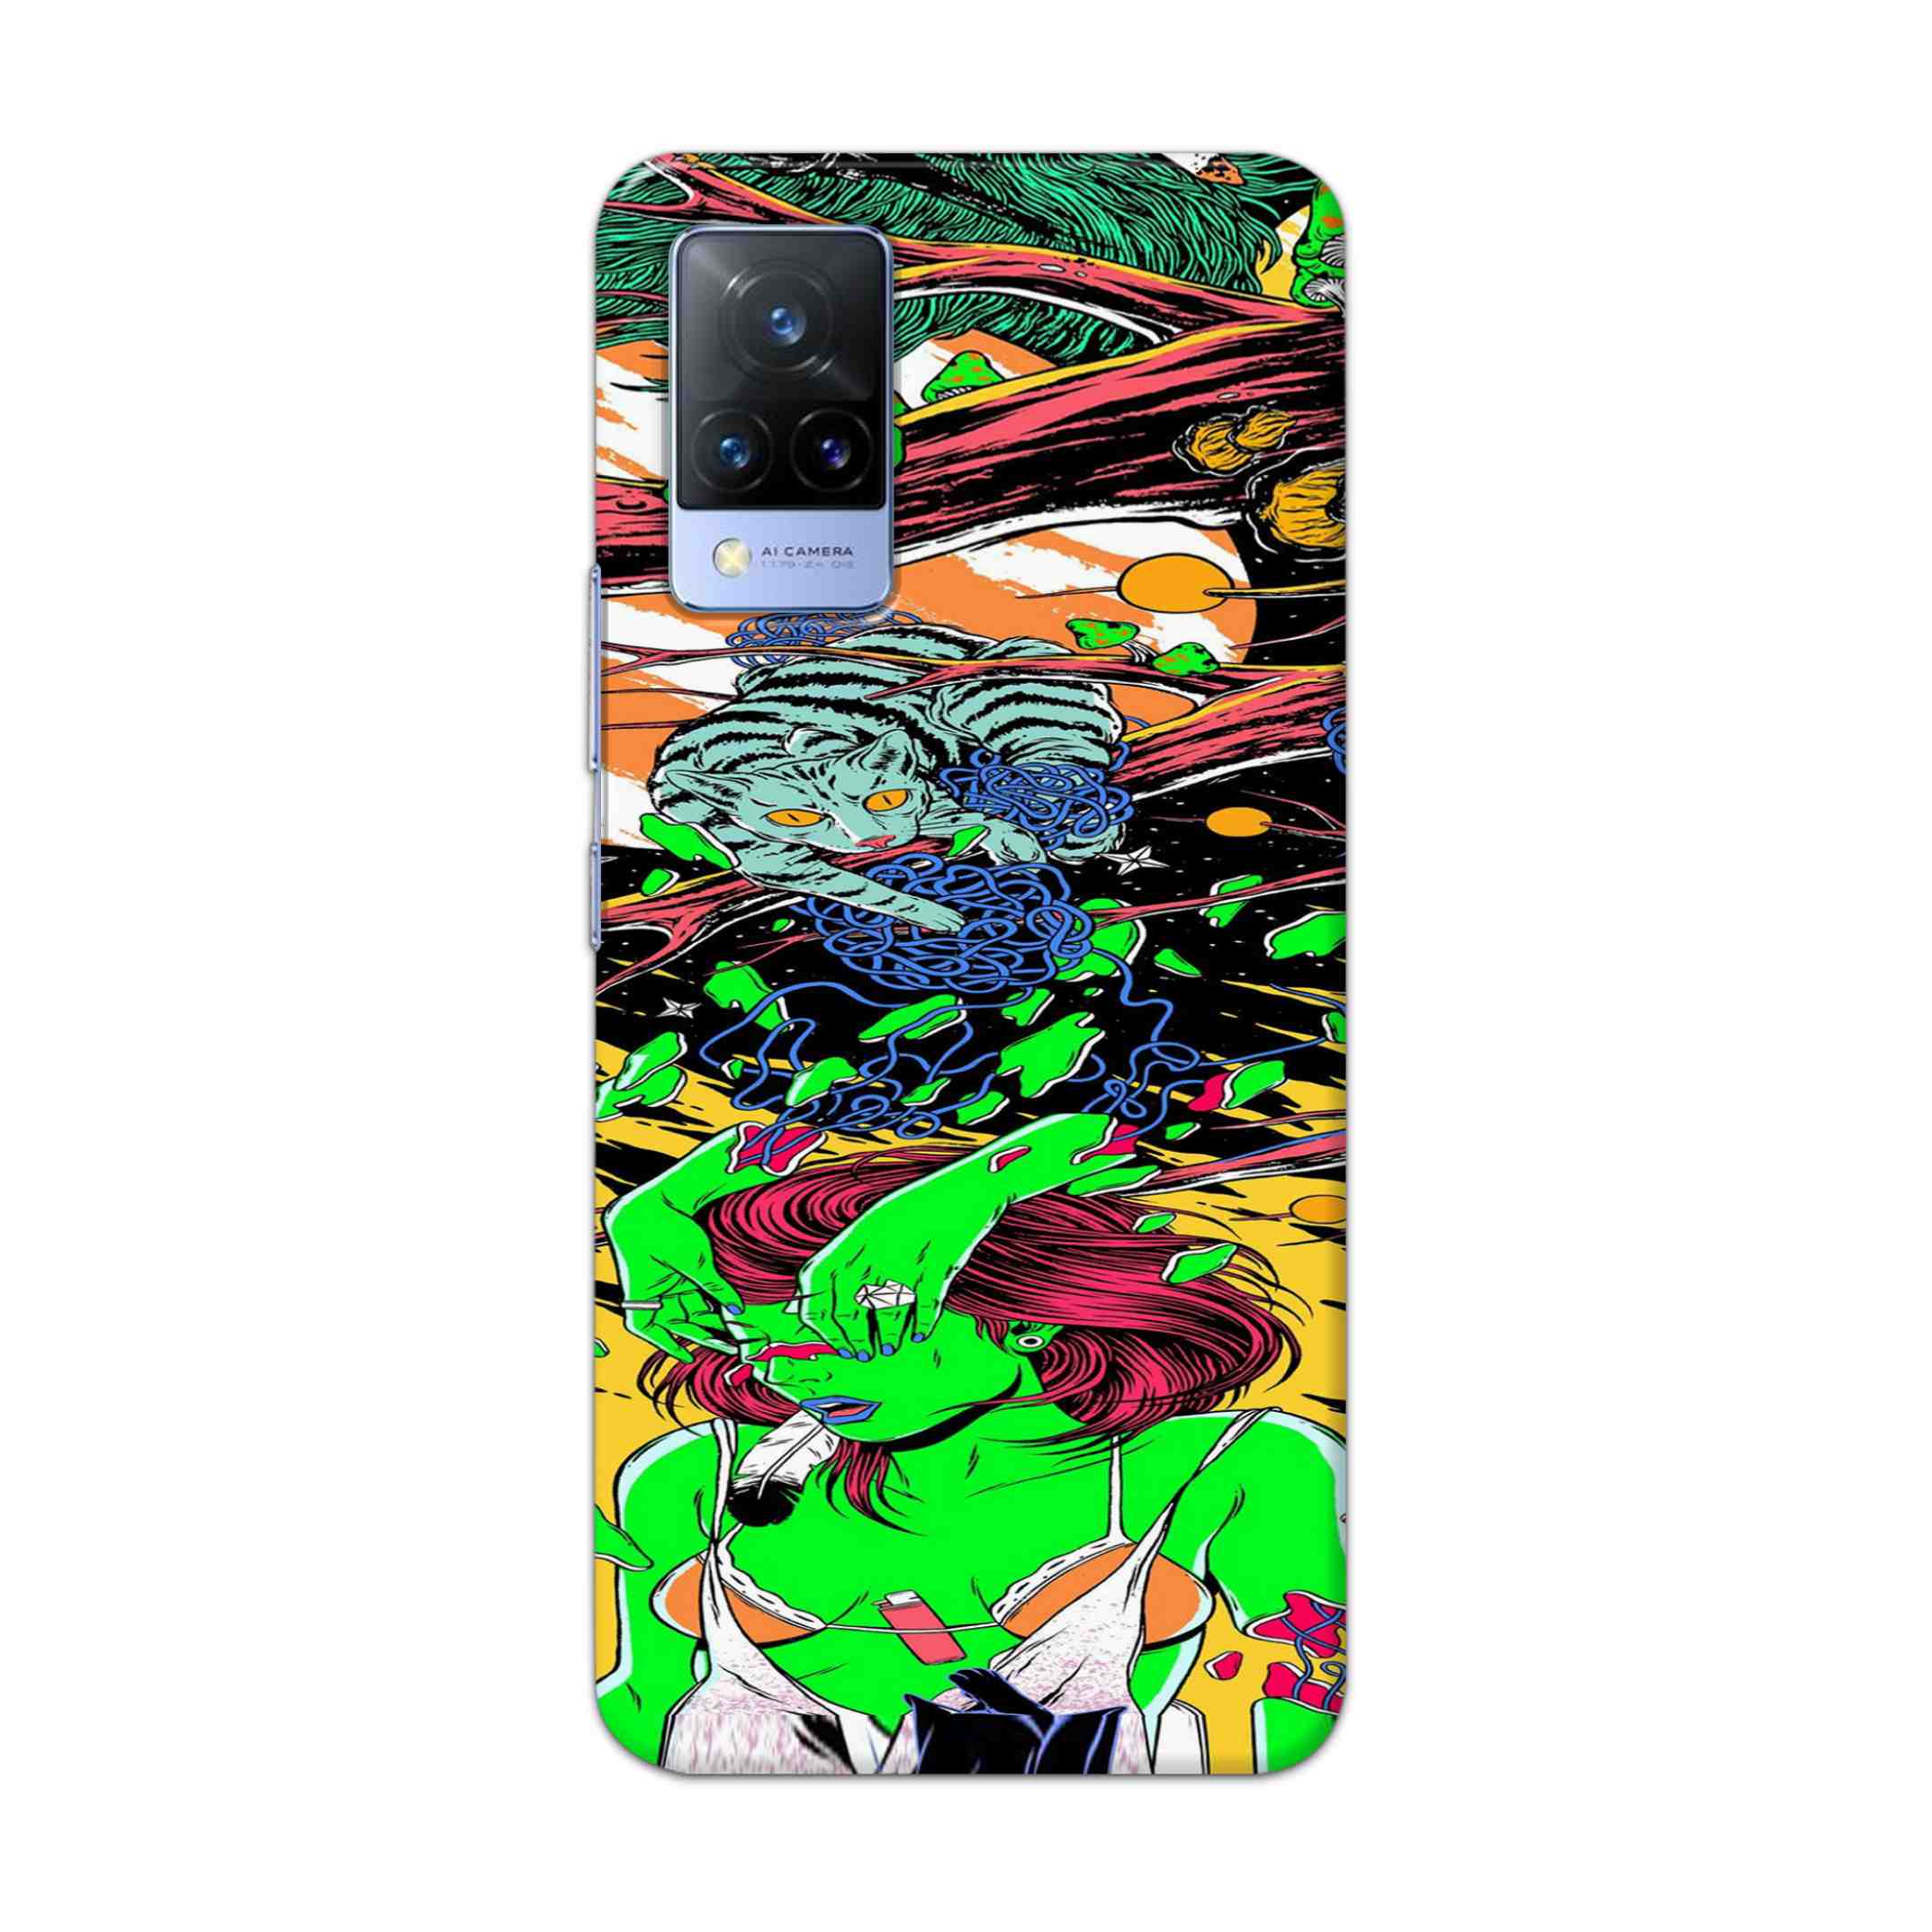 Buy Green Girl Art Hard Back Mobile Phone Case Cover For Vivo V21 Online